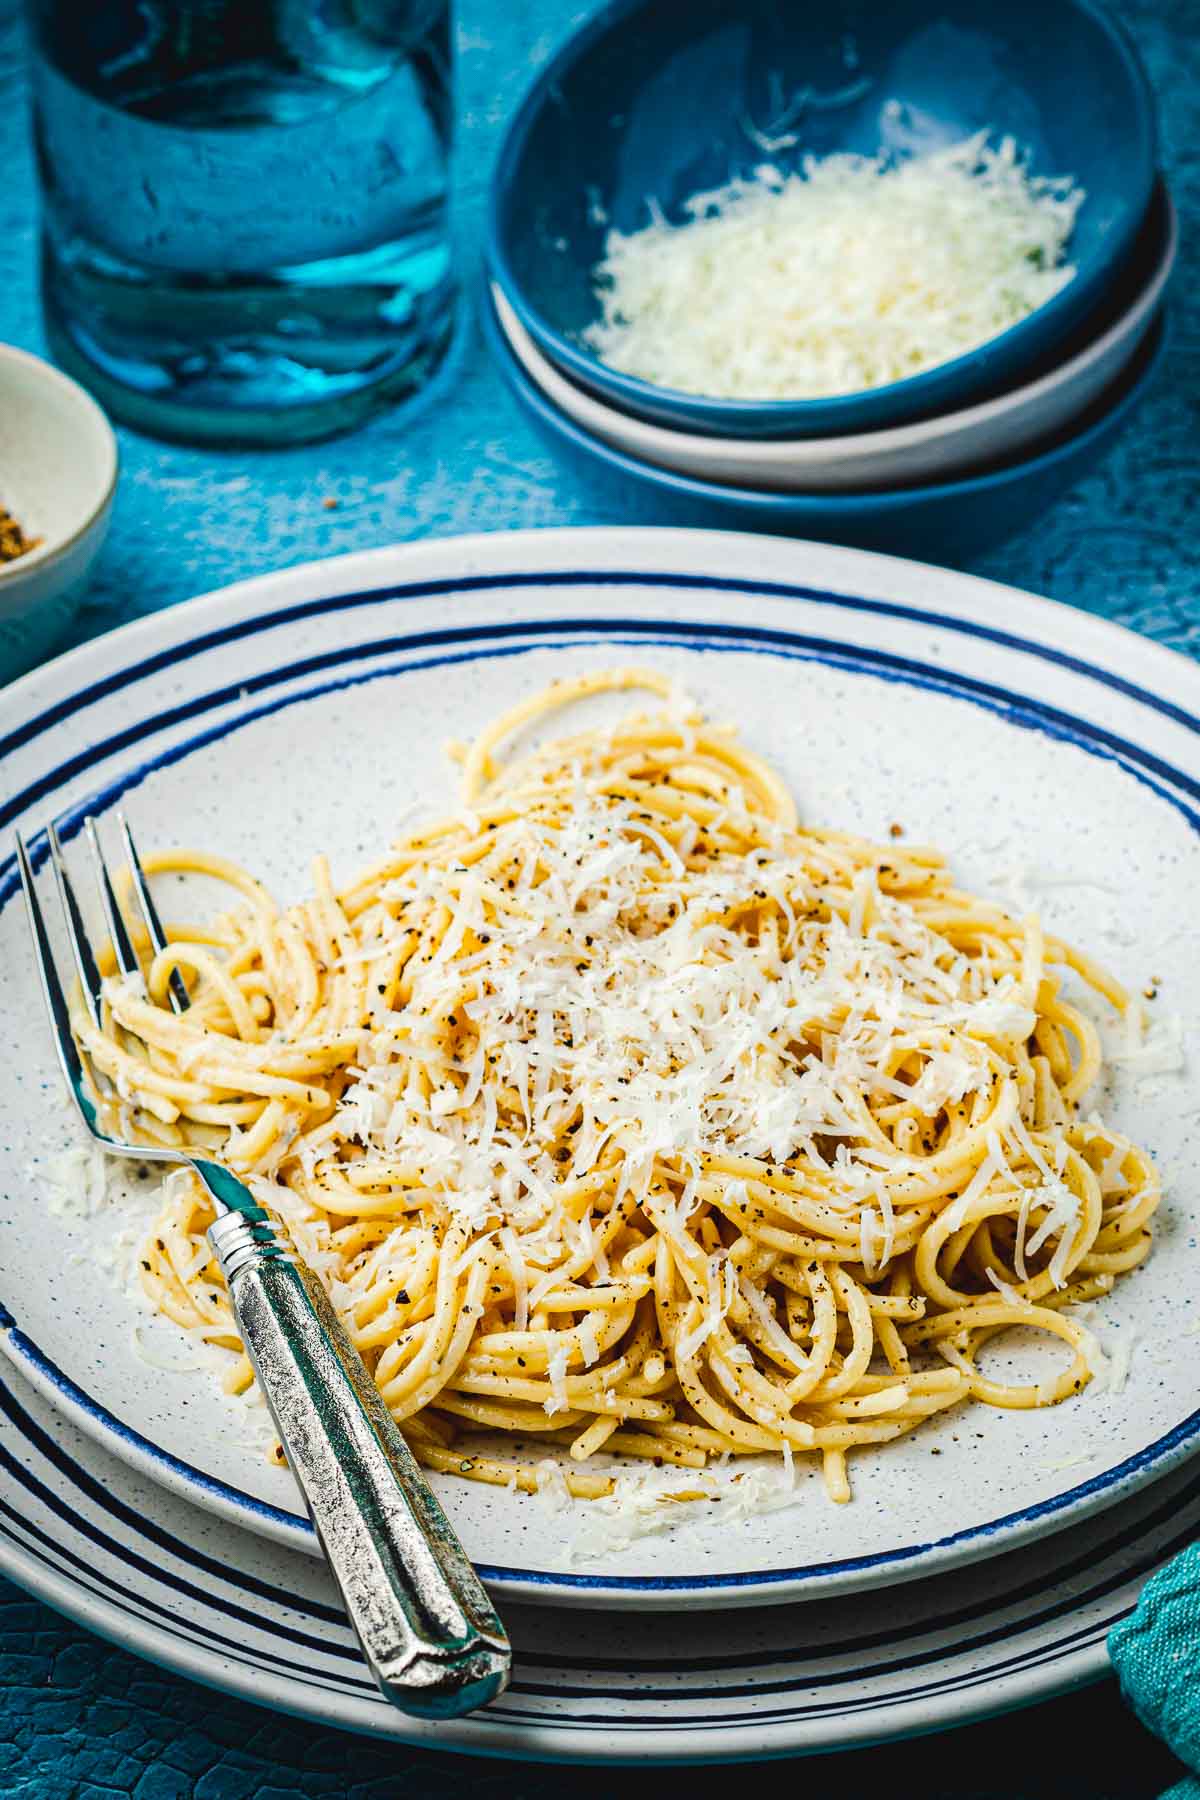 Cacio e pepe sur une assiette avec une fourchette à côté d'un bol de fromage Pecorino Romano râpé.